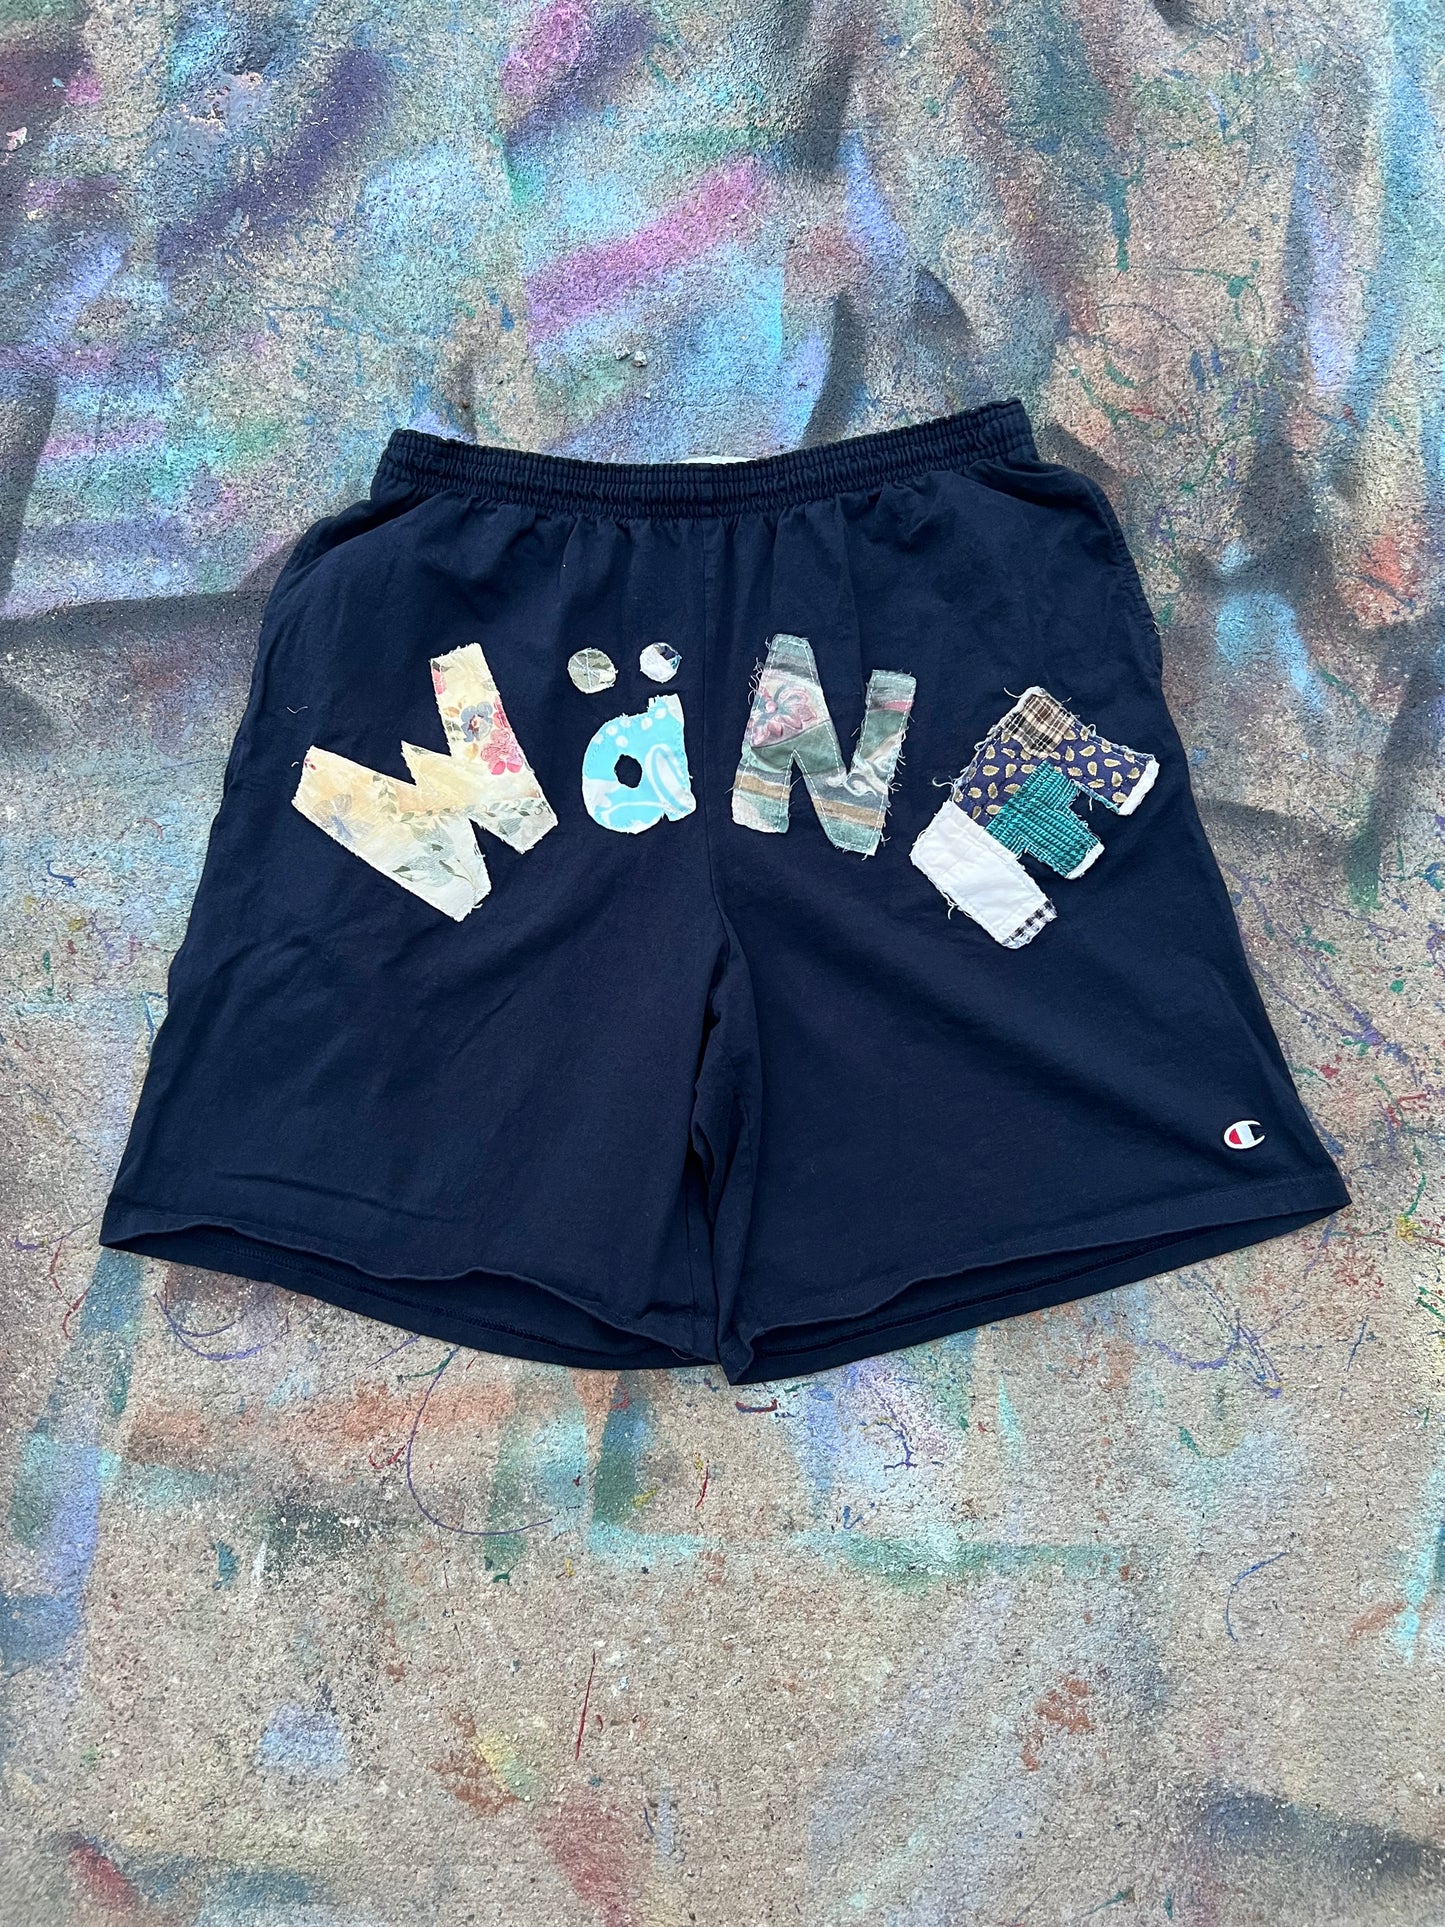 (LS) Wäne Wear Shorts (Multicolor/Navy)- XL